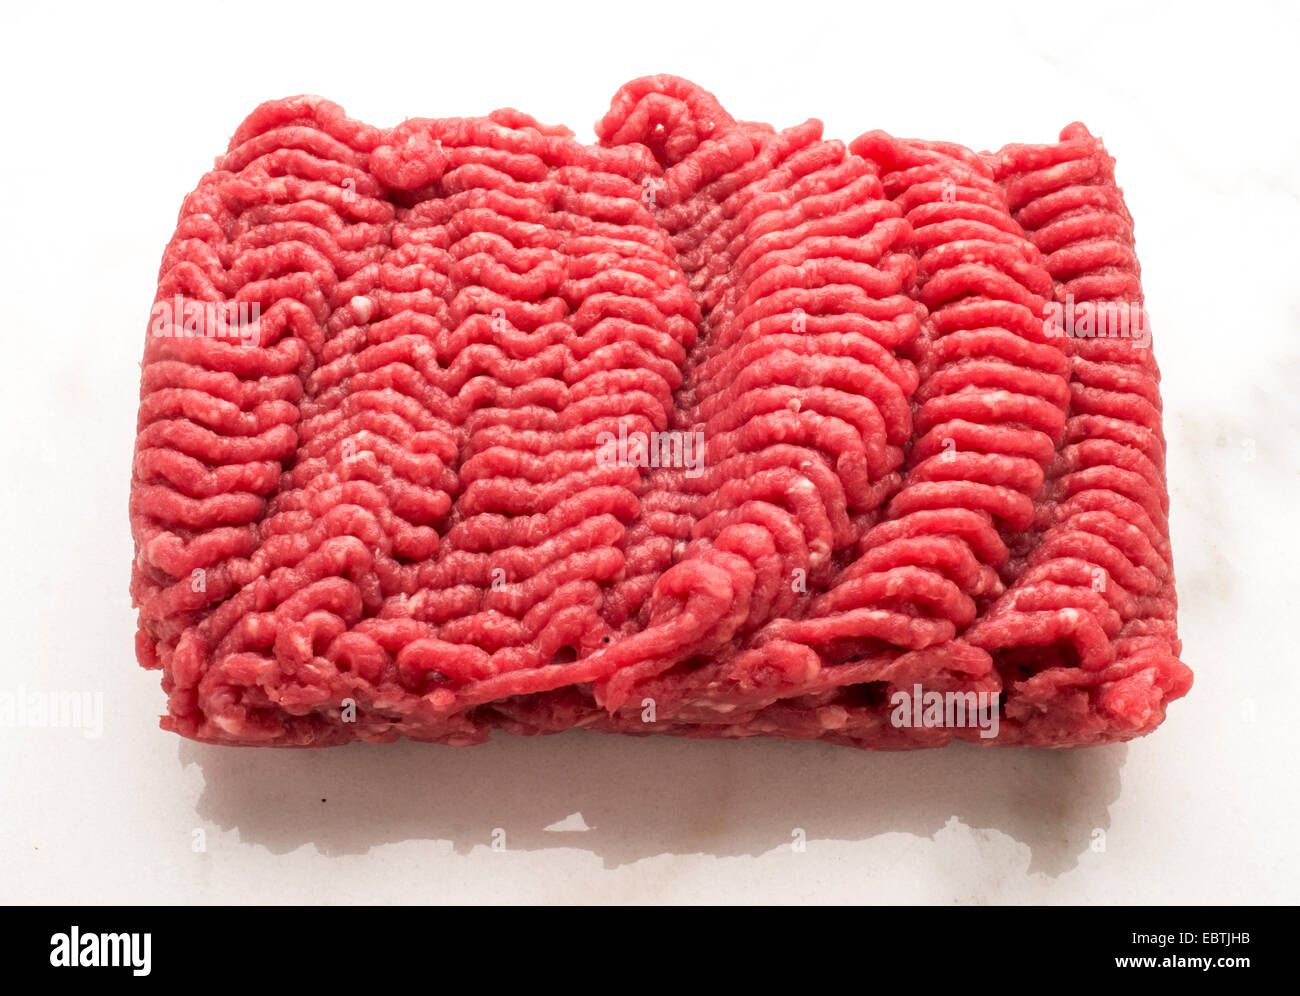 Hamburguesa de carne roja cruda Foto de stock